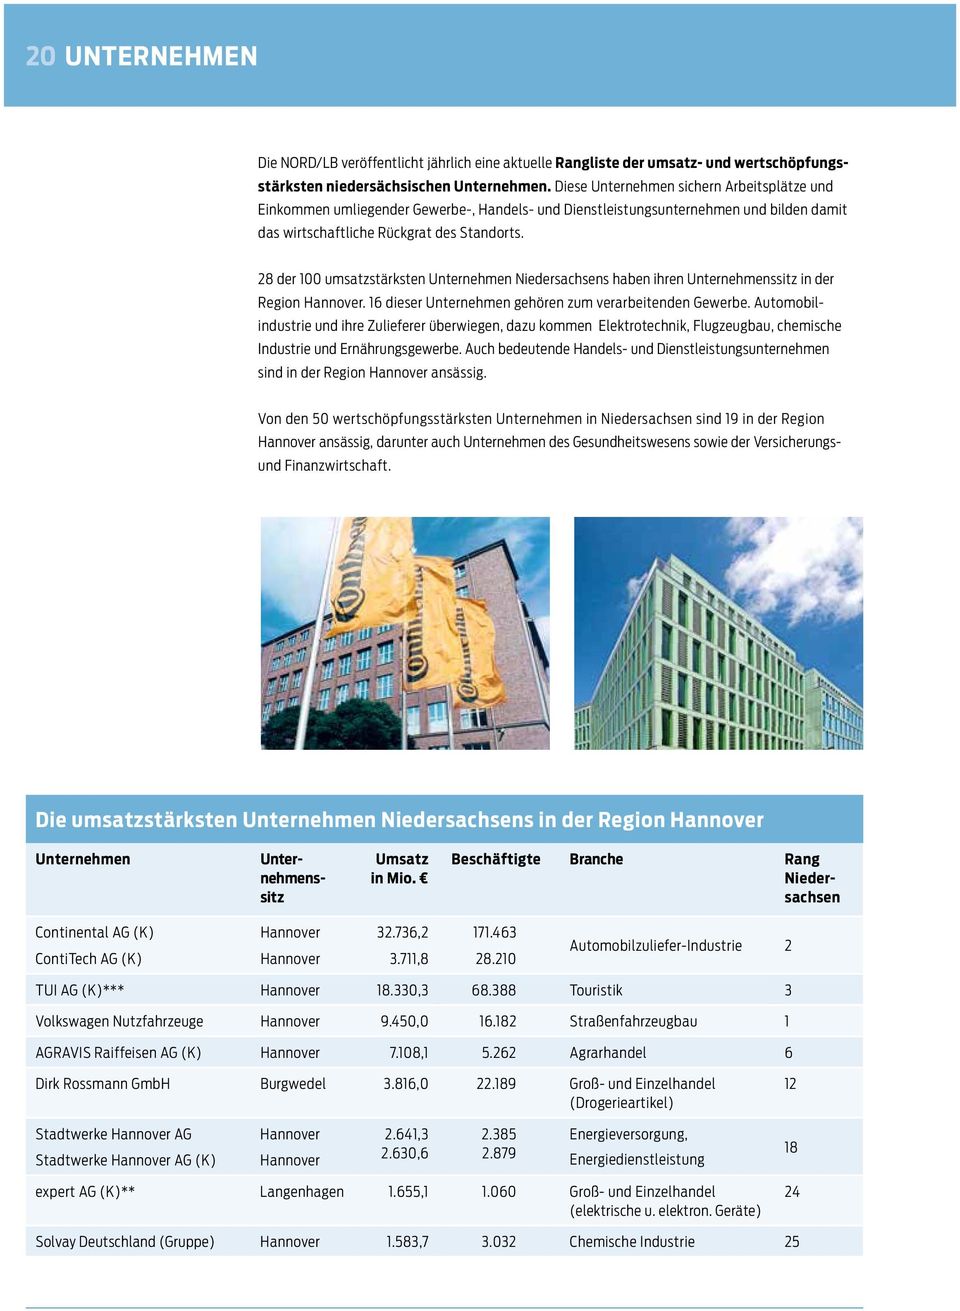 28 der 100 umsatzstärksten Unternehmen Niedersachsens haben ihren Unternehmenssitz in der Region Hannover. 16 dieser Unternehmen gehören zum verarbeitenden Gewerbe.